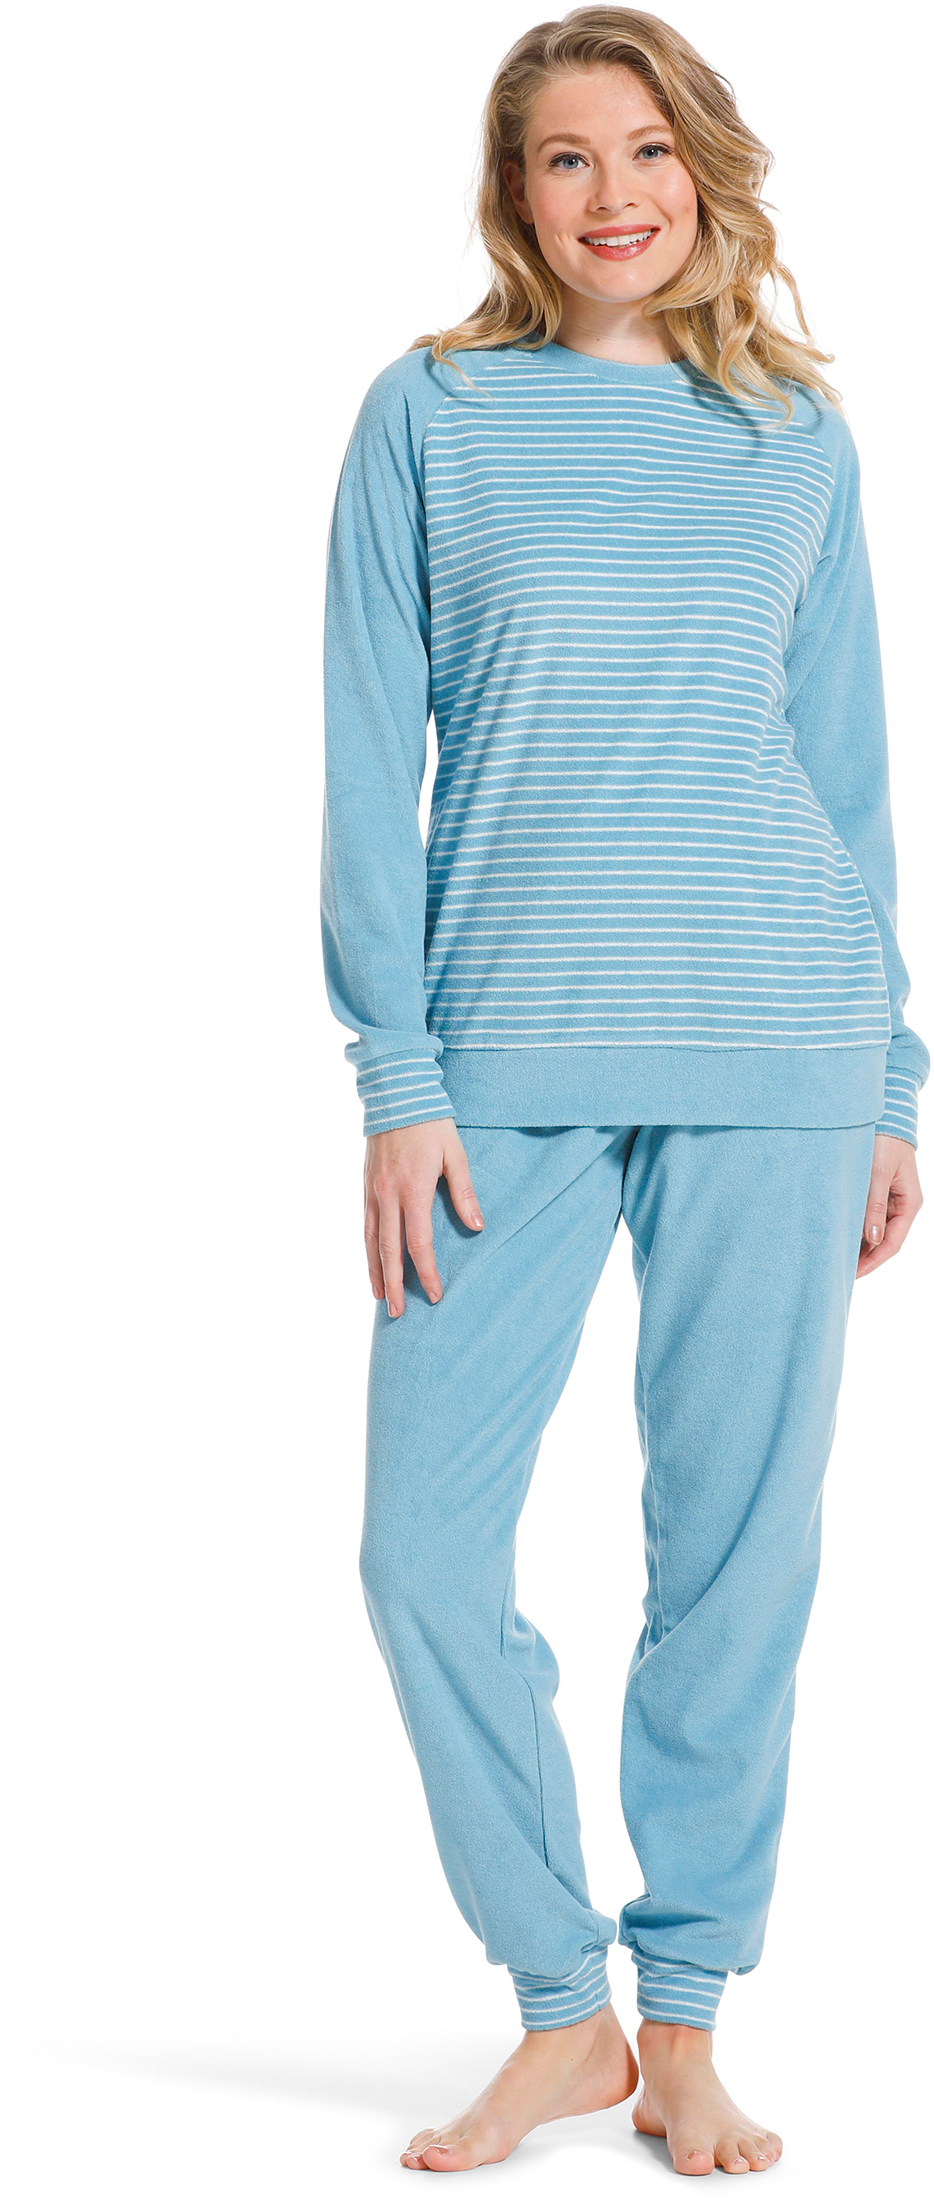 Pastunette badstof dames pyjama 20222-144-2 - Blauw - 44